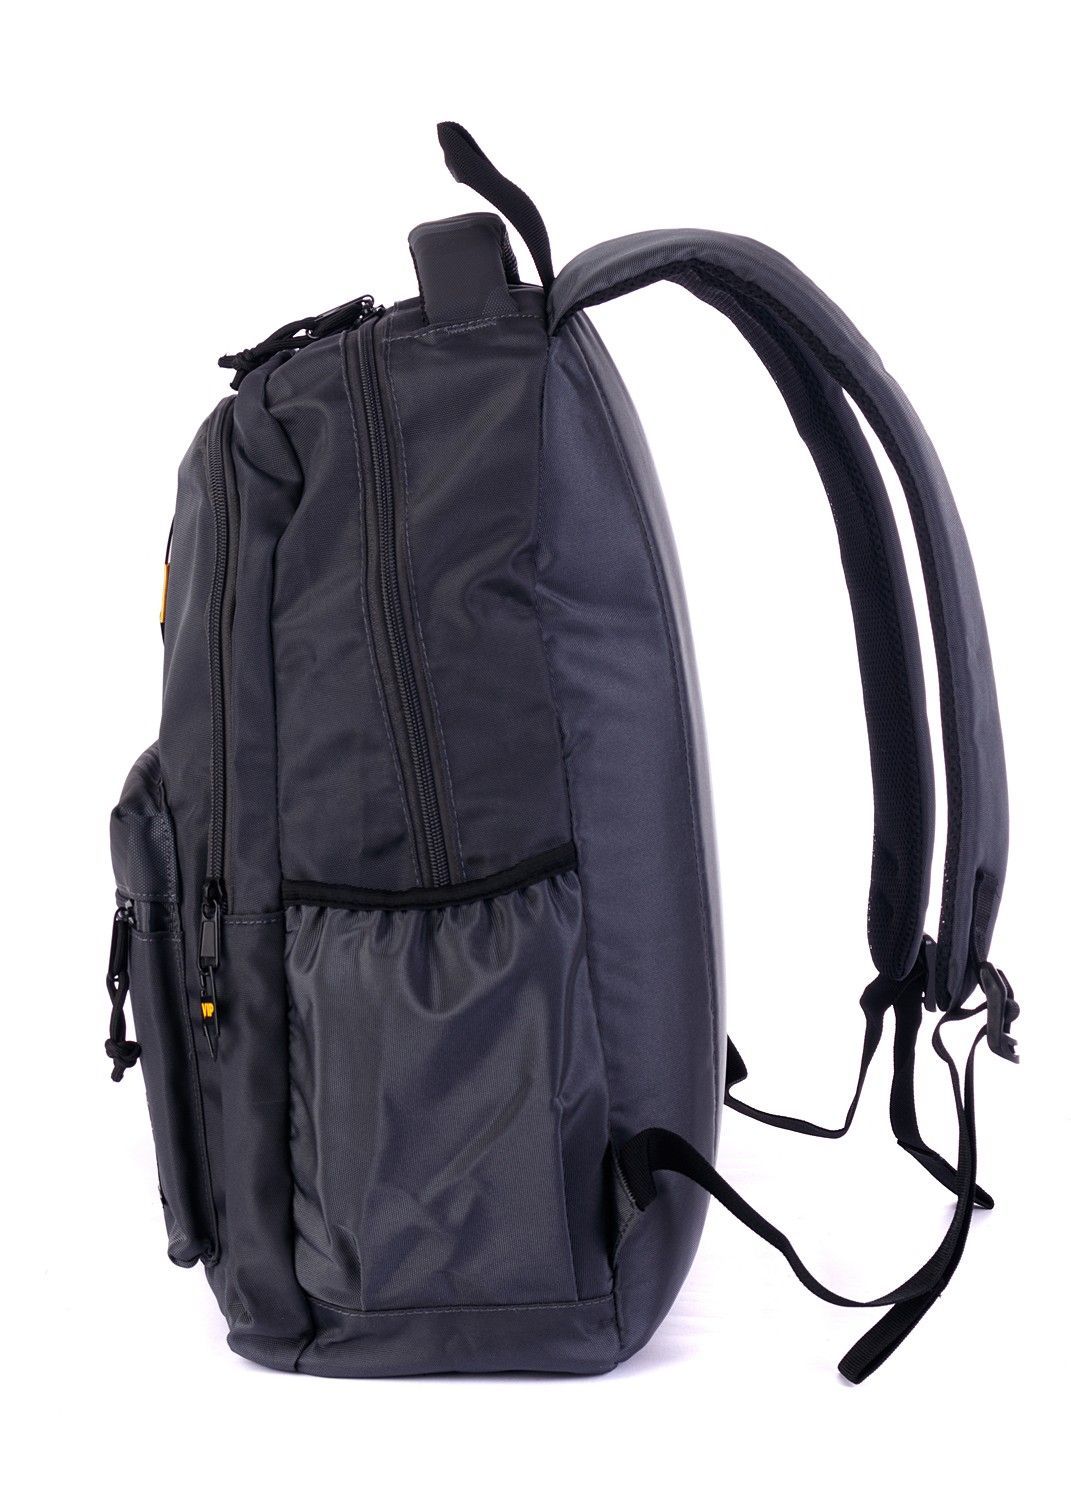 Рюкзак мужской серый городской, с широкими лямками и отделением для ноутбука, 23л.